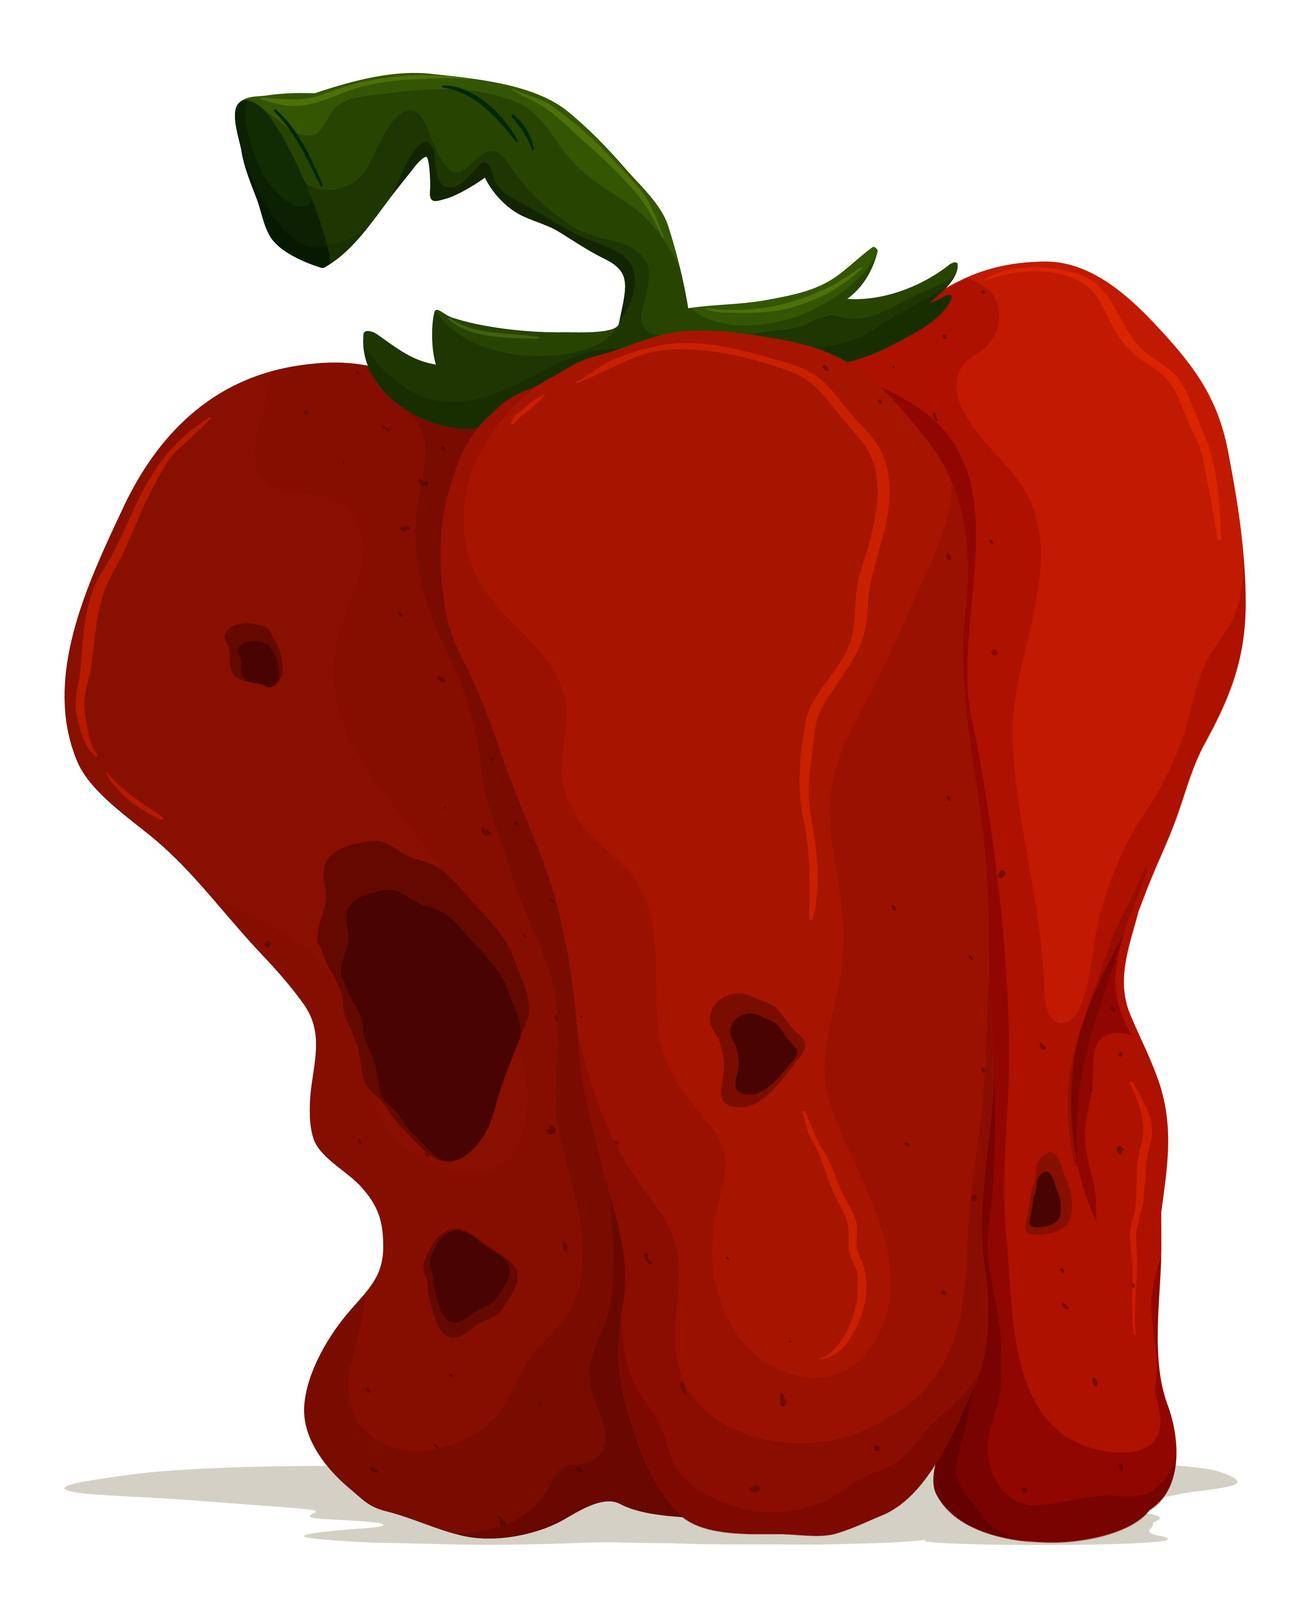 Rotten bell pepper on white background illustration